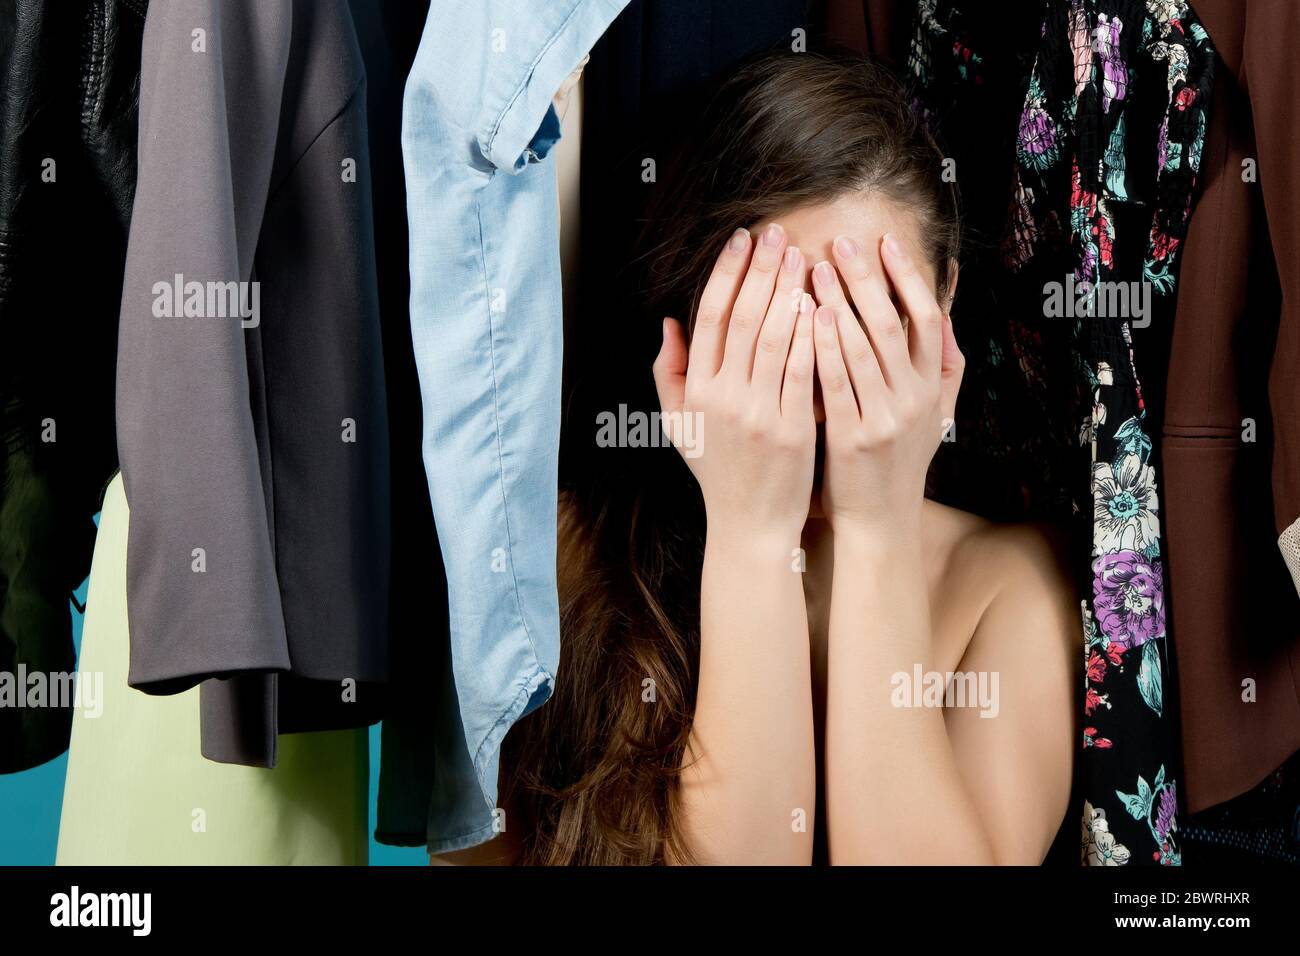 La fille couvre son visage, perdu dans le choix des vêtements sur le fond des cintres avec des vêtements, fond bleu Banque D'Images